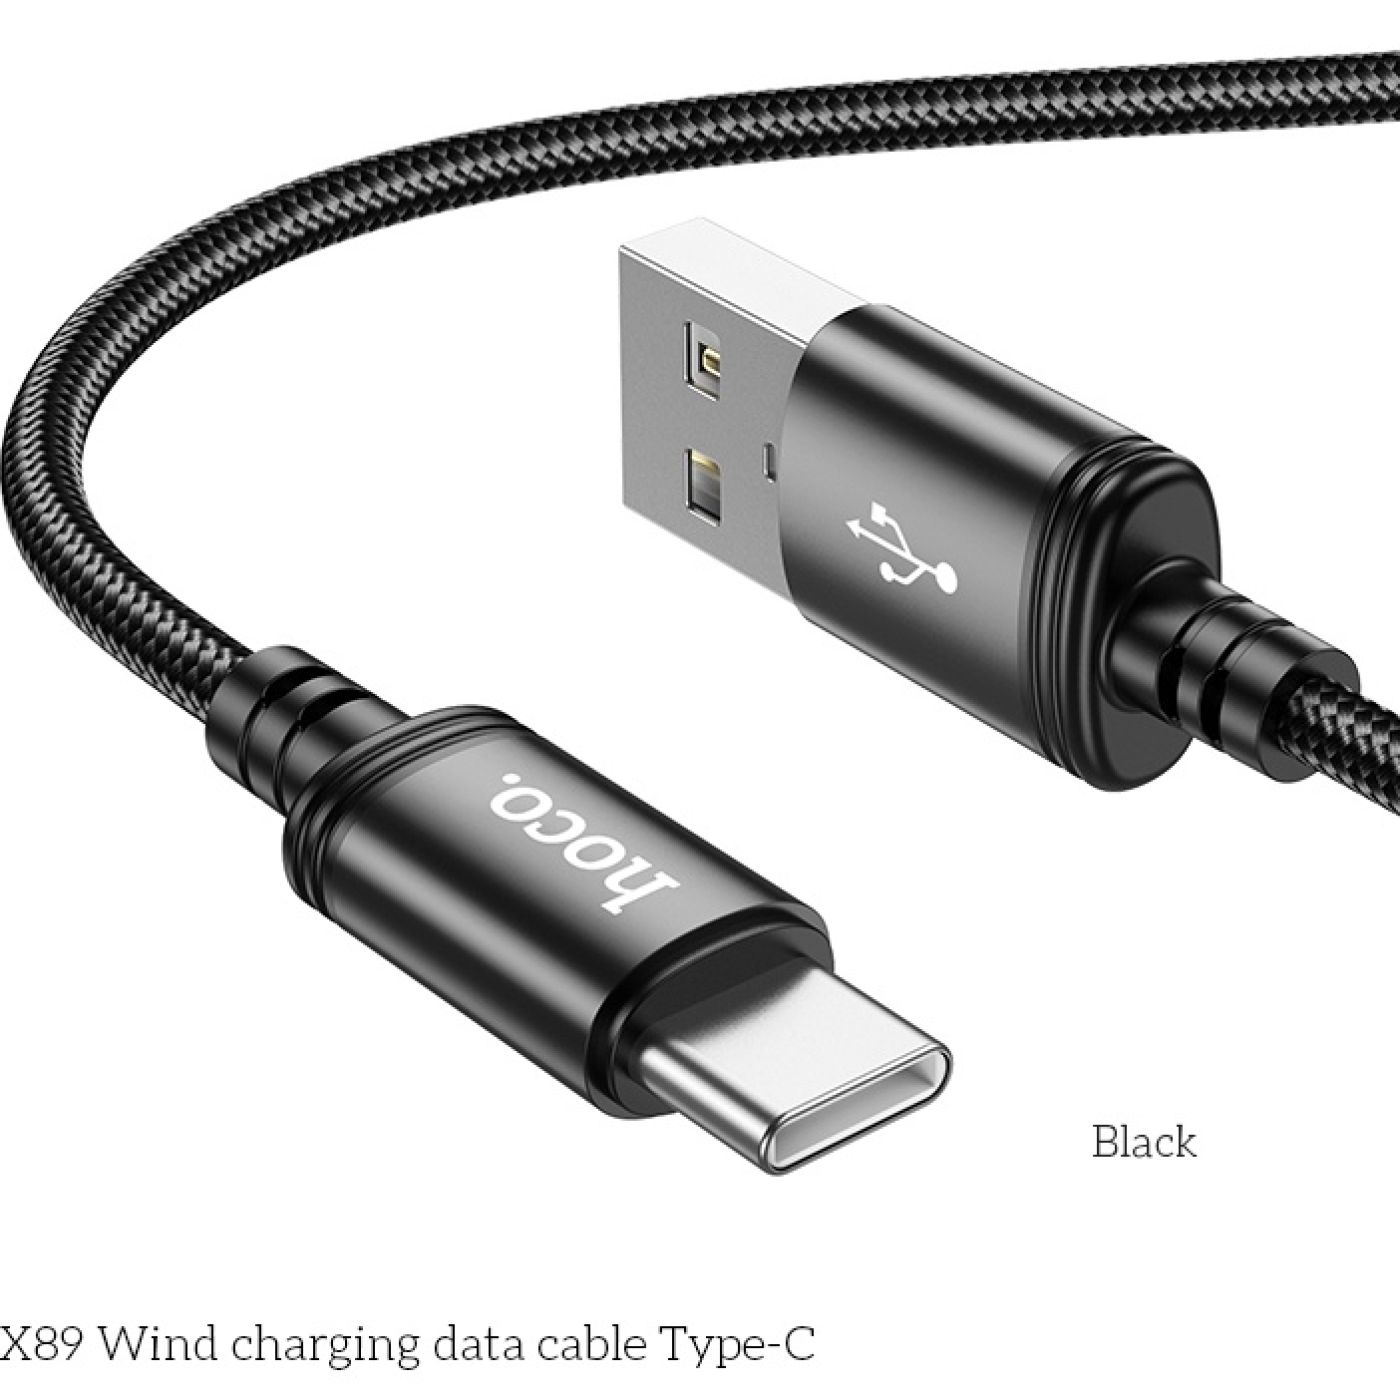 Cáp sạc nhanh Hoco X89 cổng USB dây dù chống rối đồng bộ dữ liệu cao cho Smartphone dài 1M